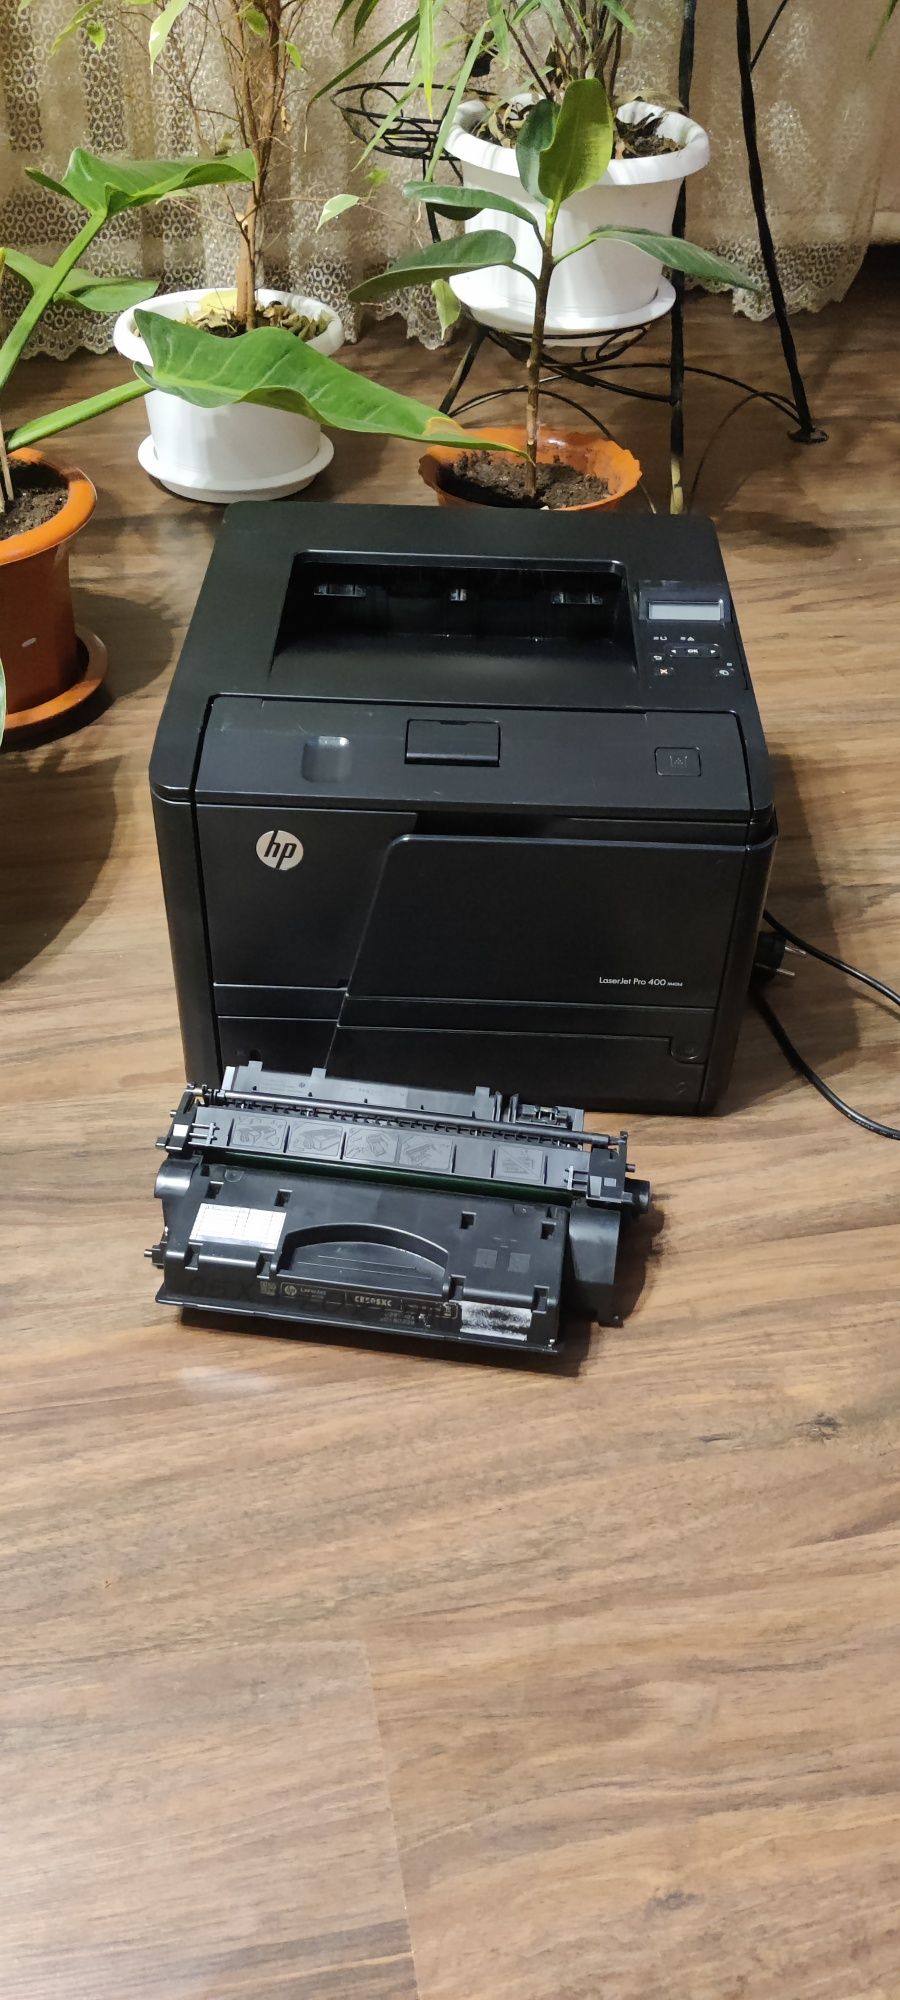 HP LaserJet Pro 400 m401d